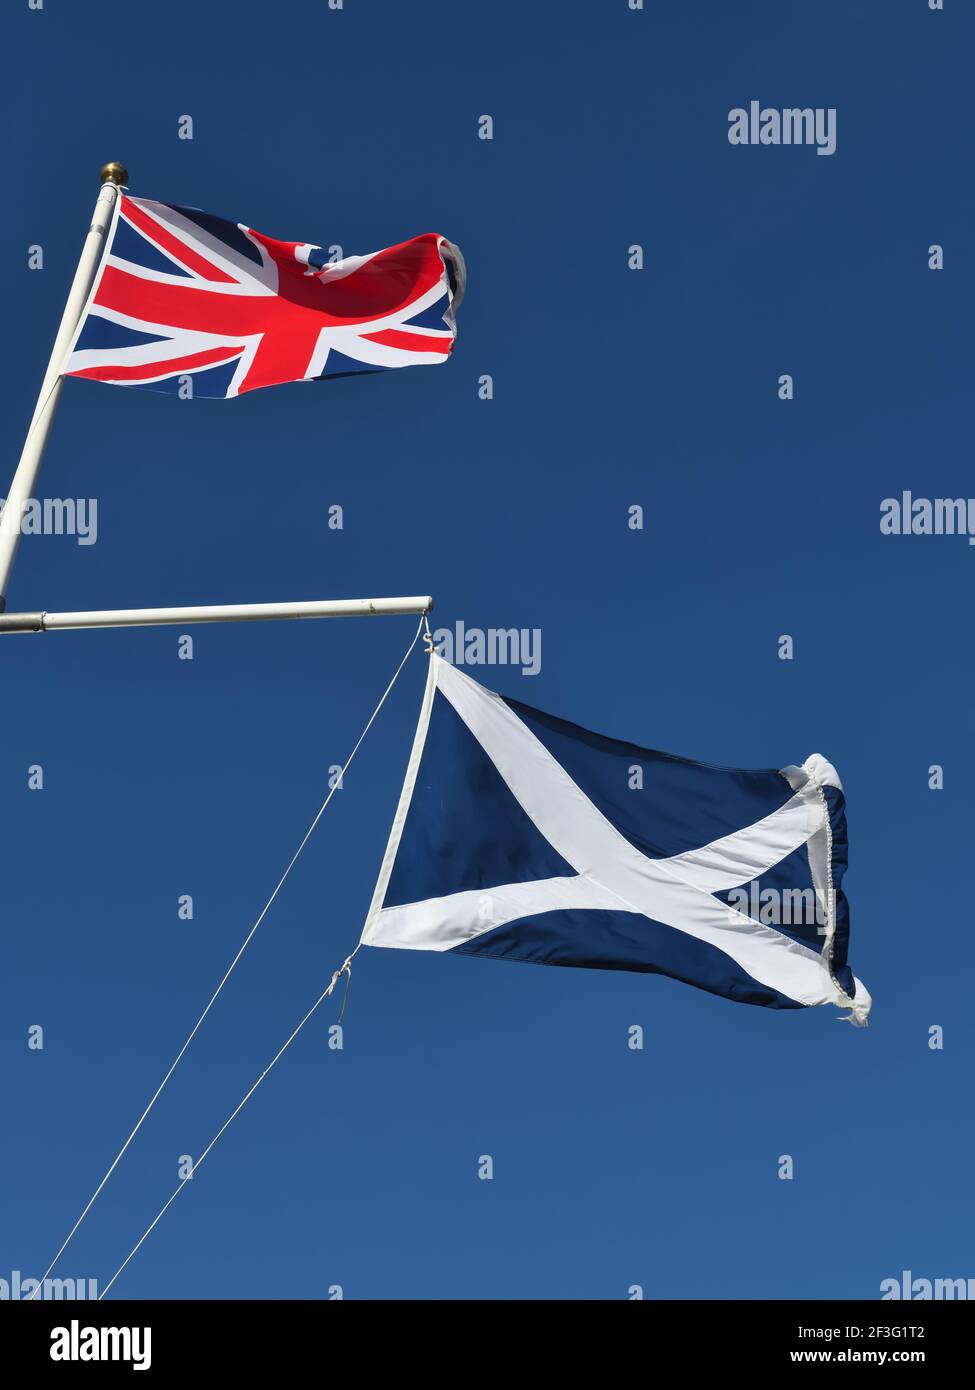 La bandera de la Unión Británica y el Scottish Saltire, St. Andrew's Cross volando juntos contra un cielo azul Foto de stock